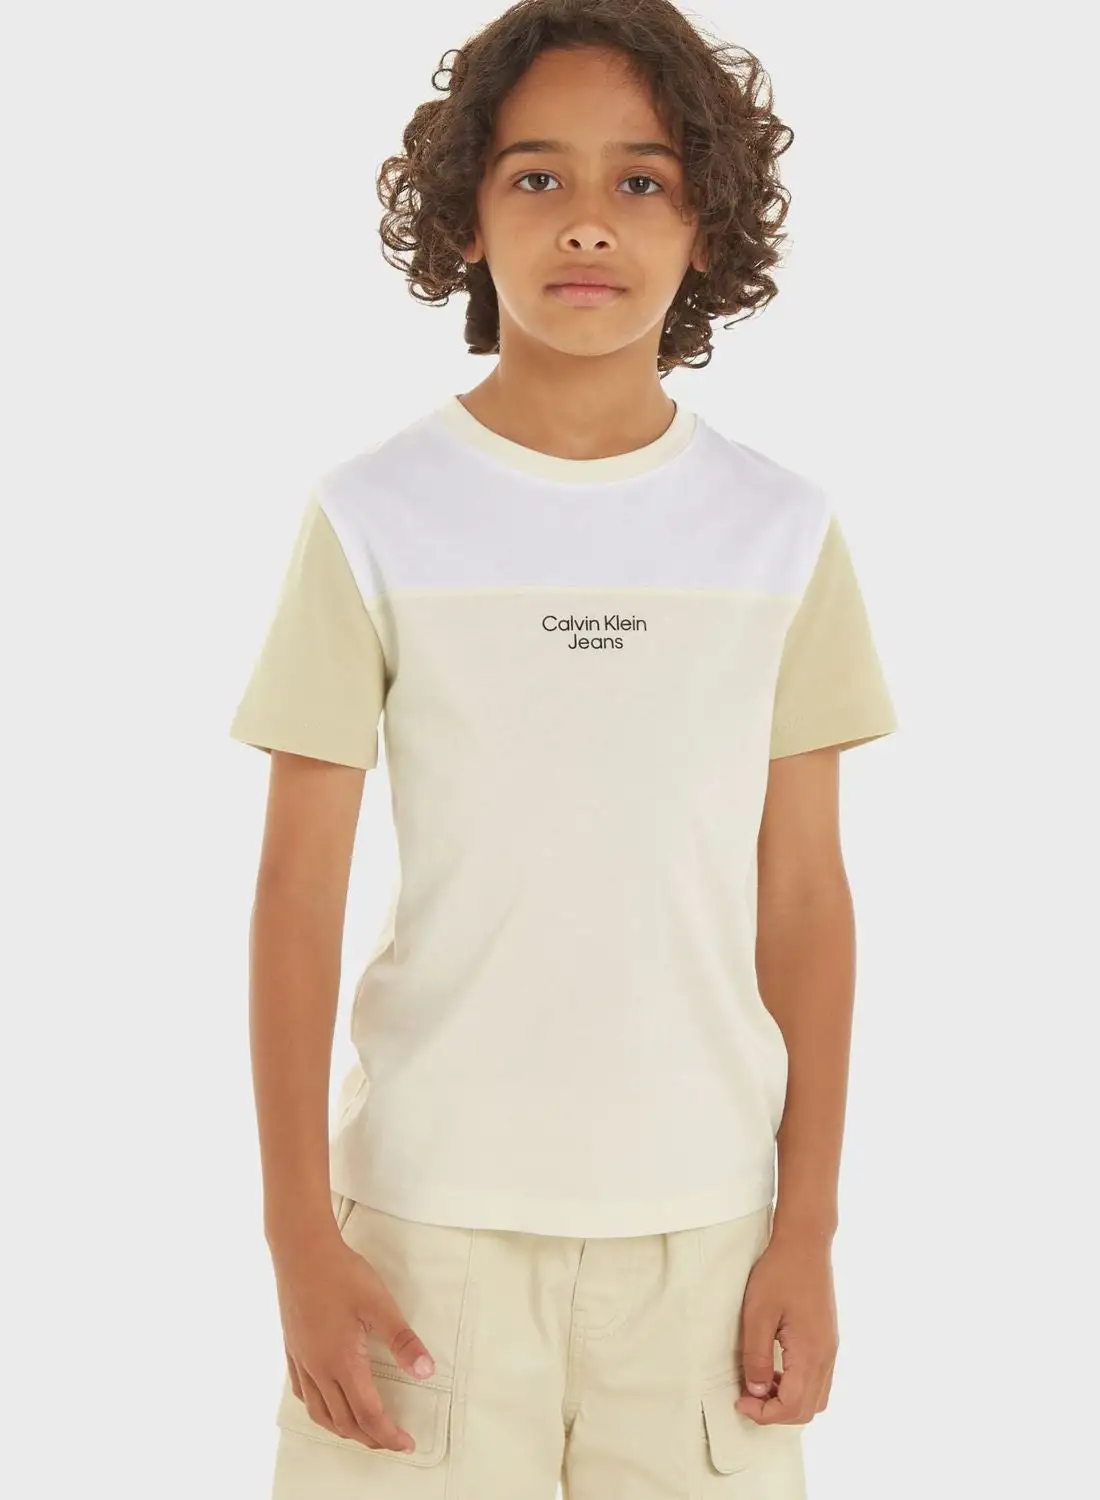 Calvin Klein Jeans Kids Color Block T-Shirt